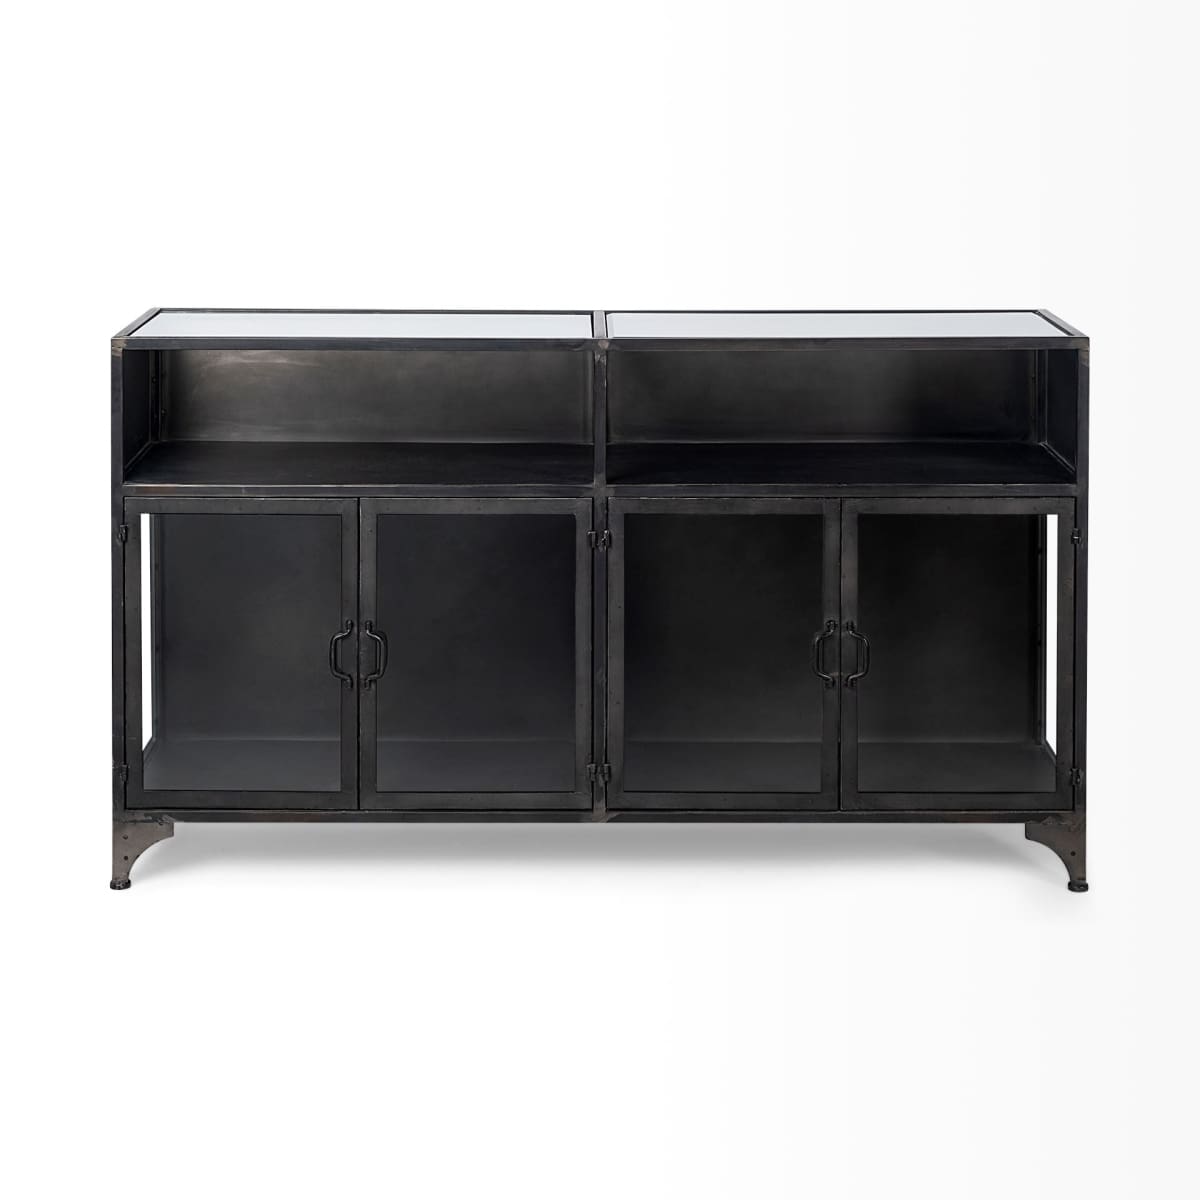 Pender Cabinet Black Metal - cabinets